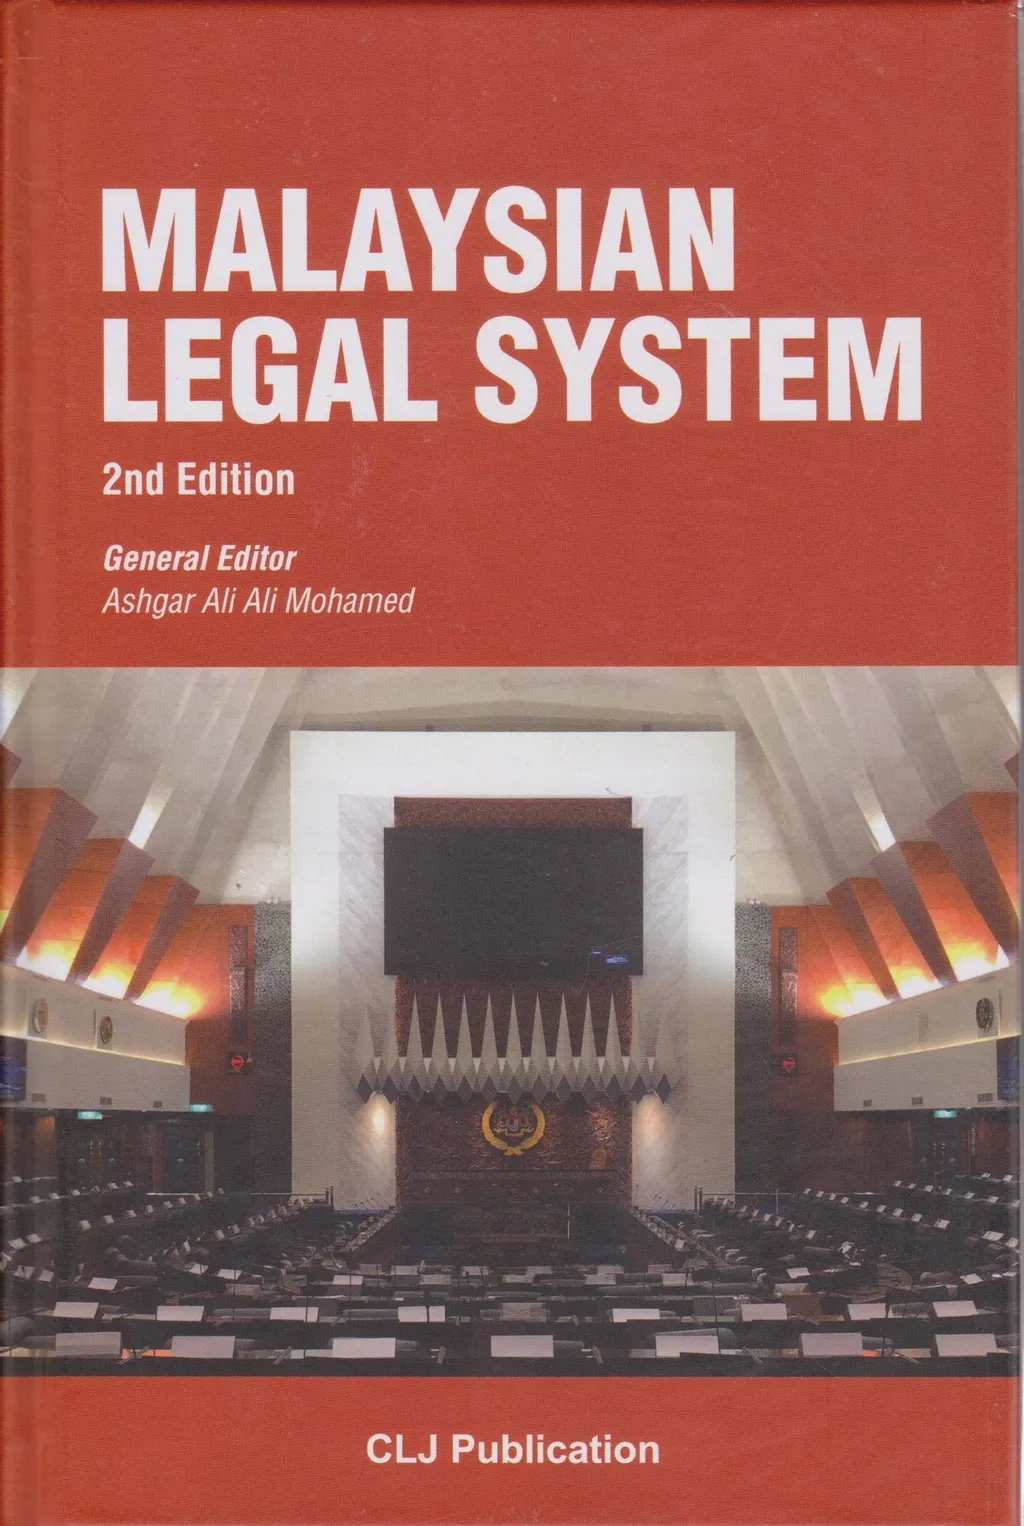 Malaysian Legal System- CLJ Publication